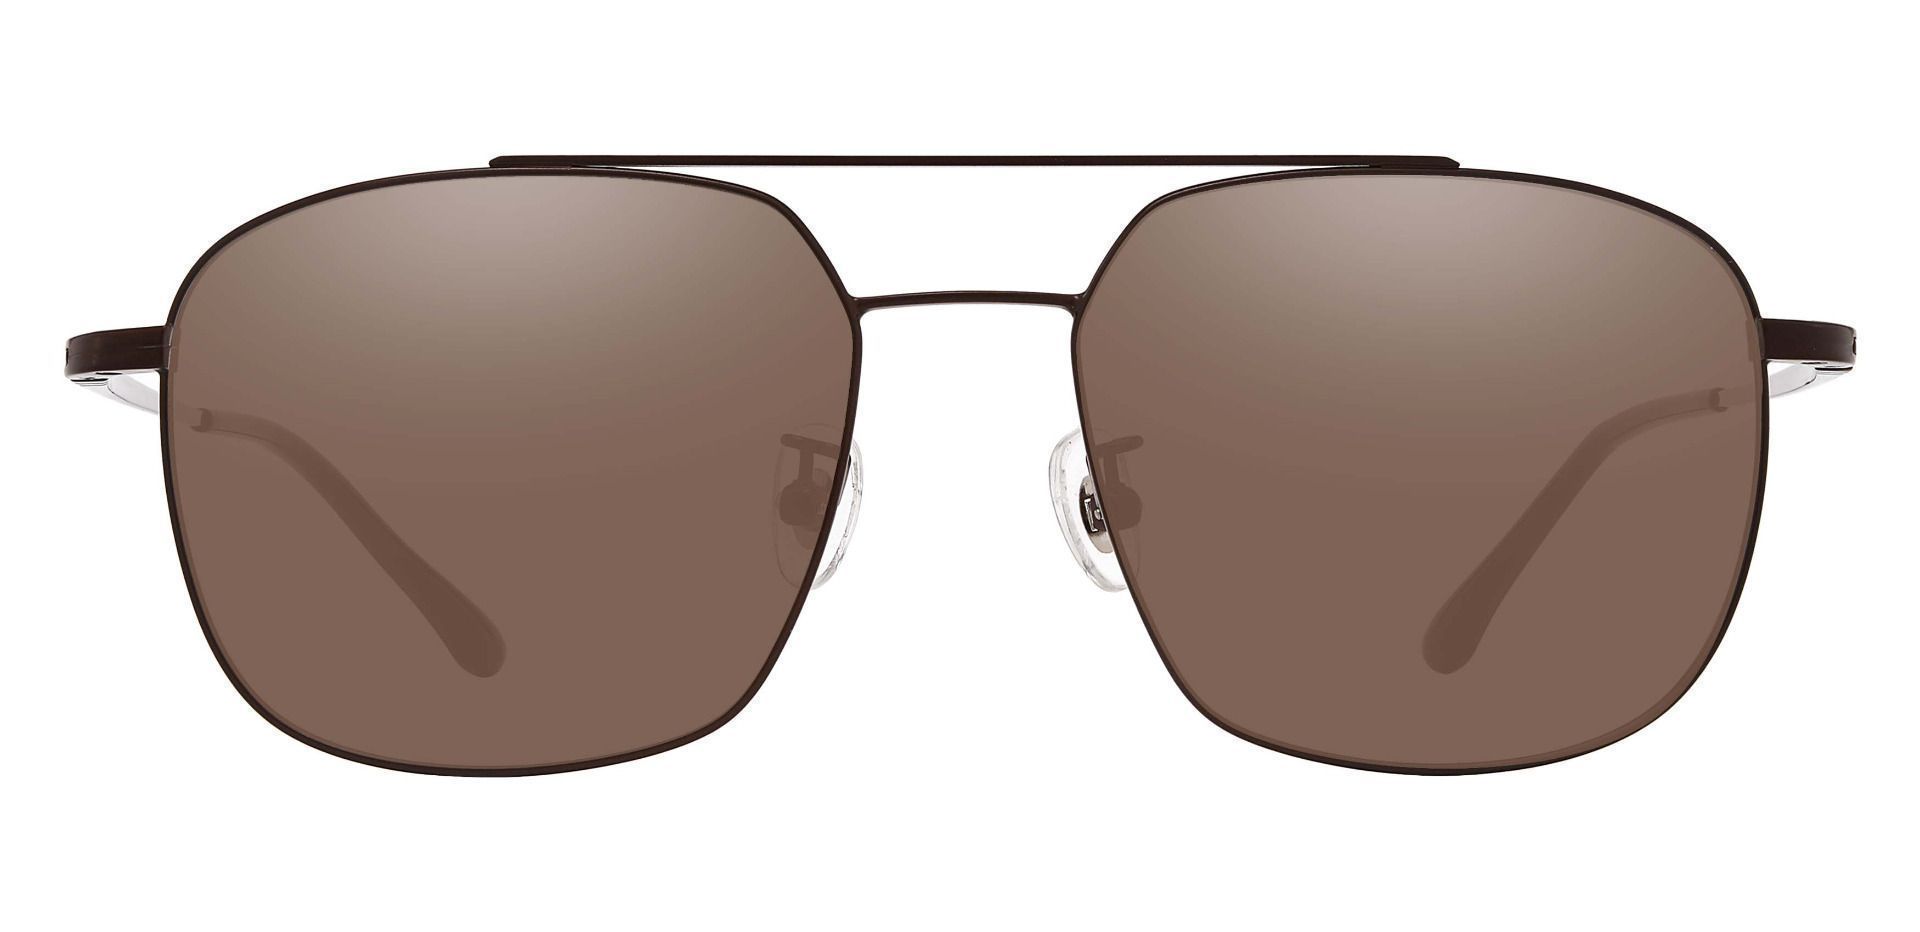 Trevor Aviator Reading Sunglasses - Brown Frame With Brown Lenses